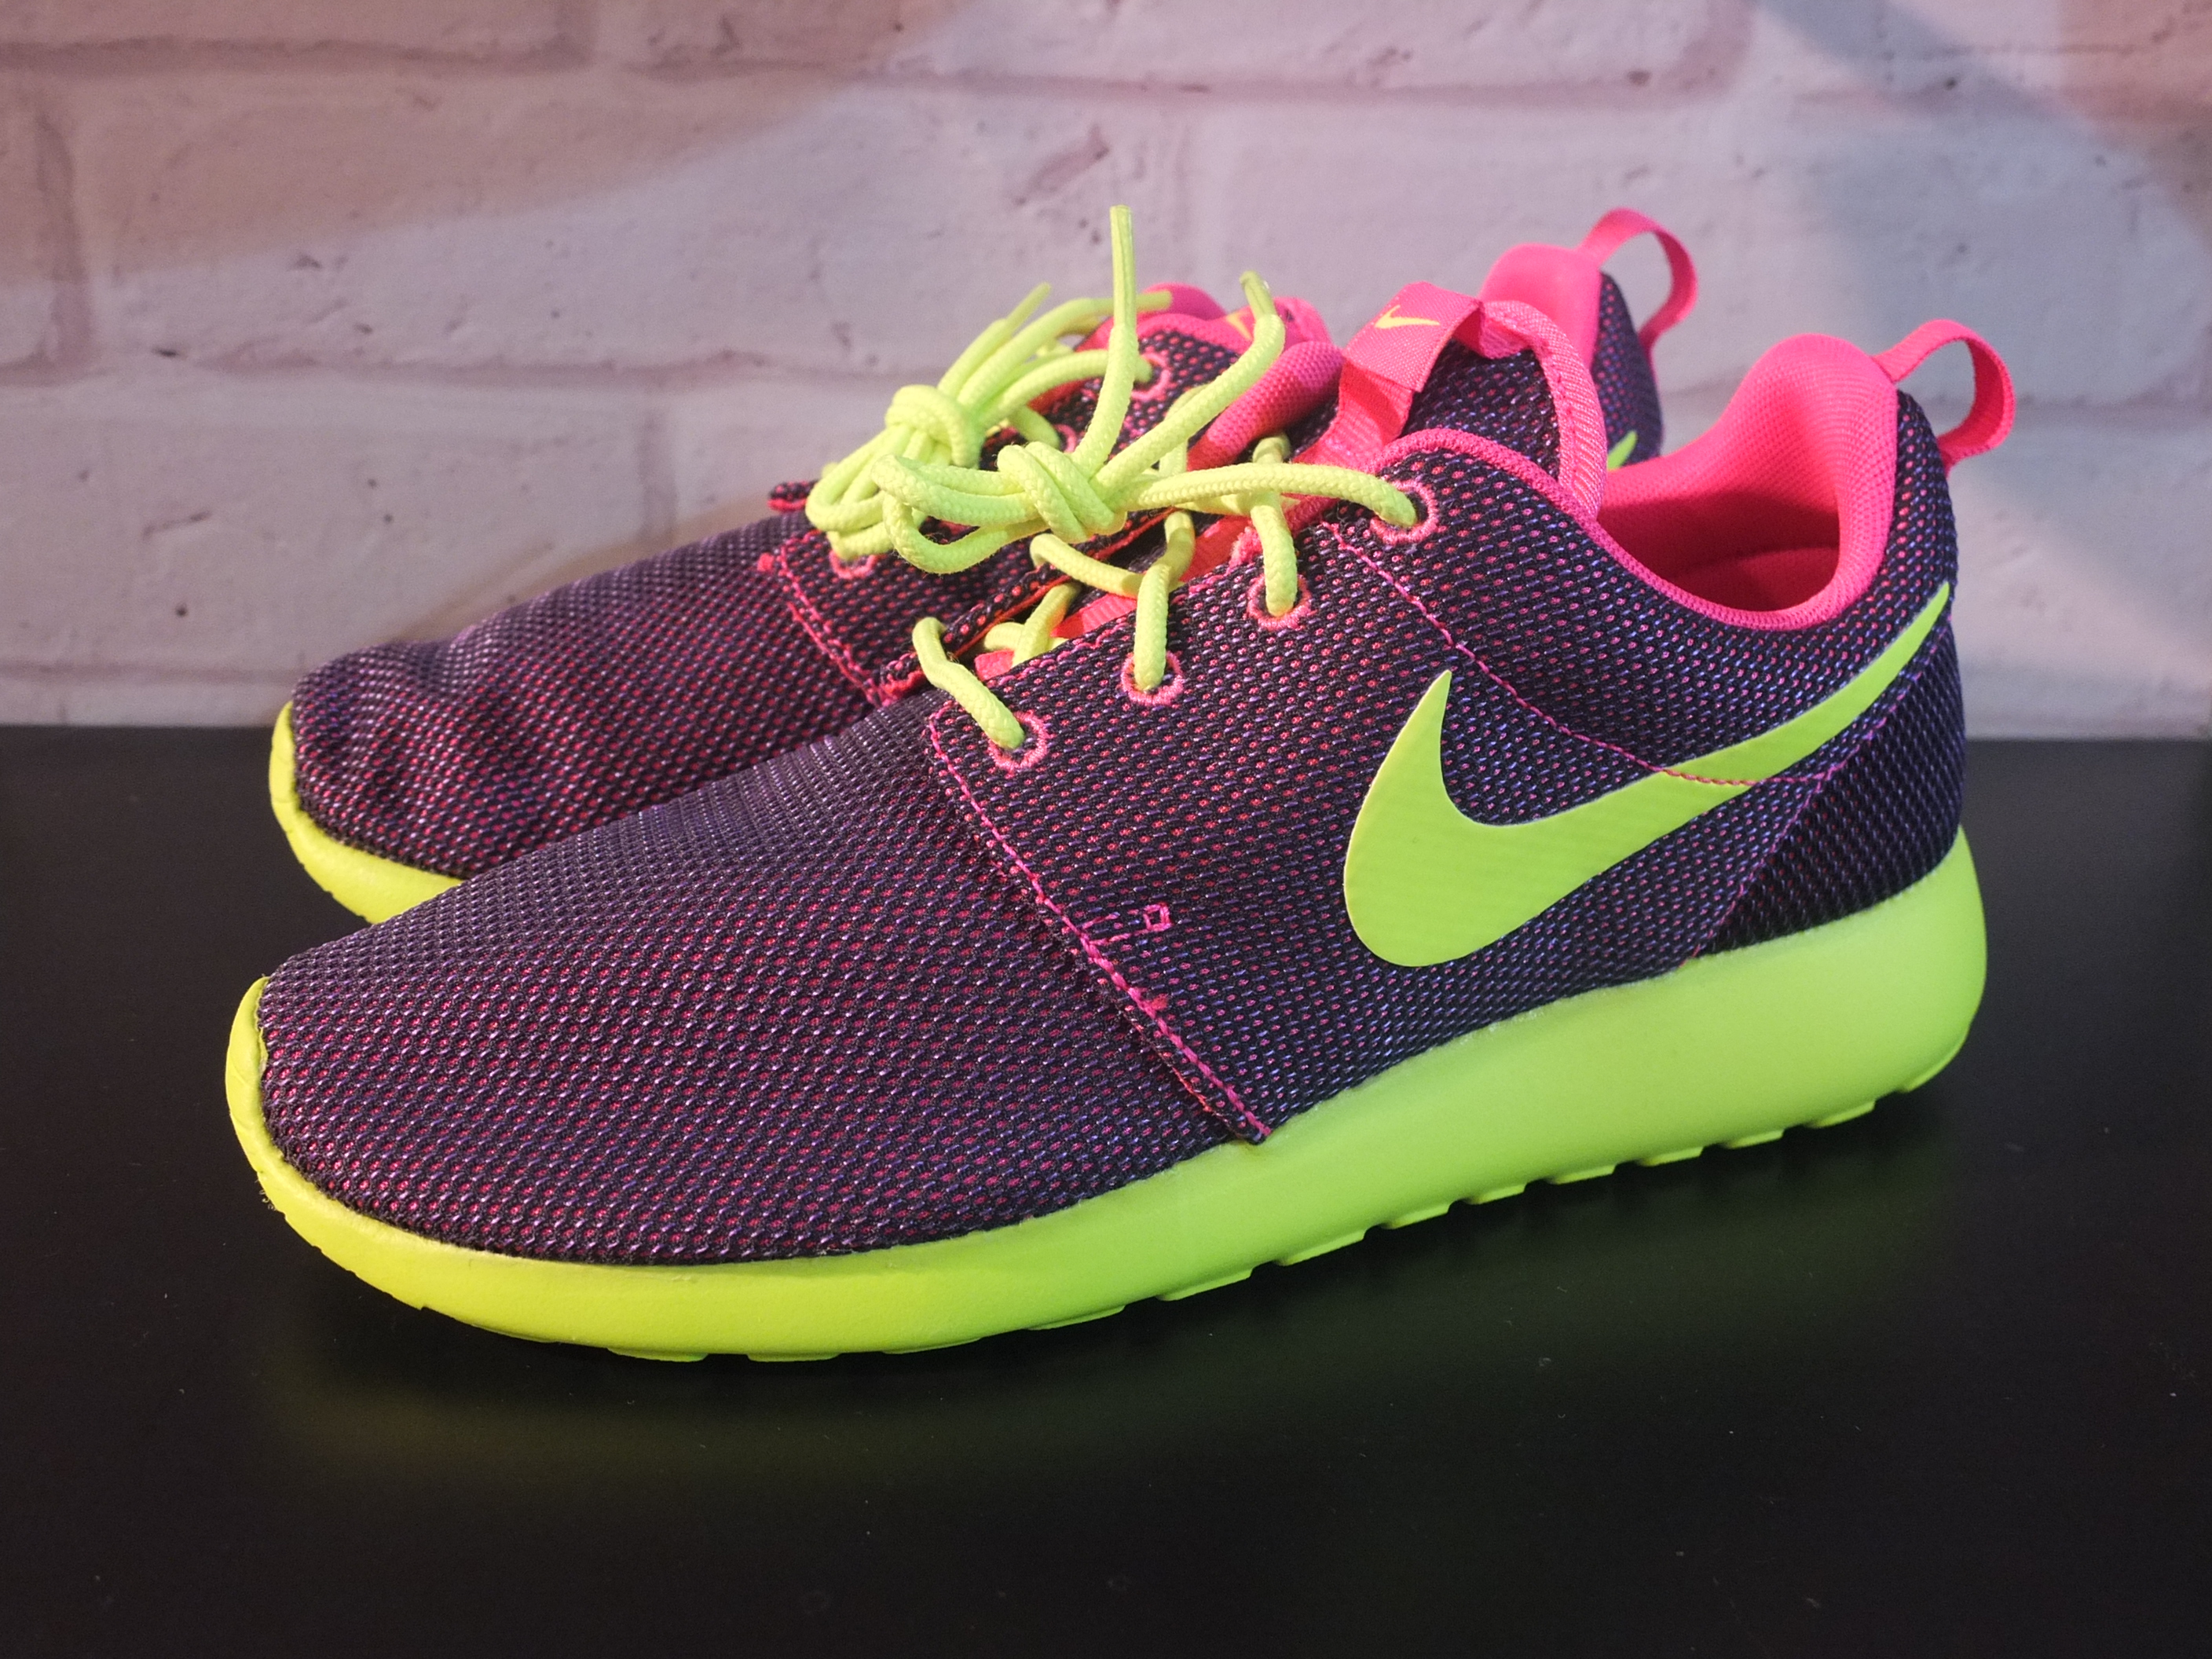 Nike Roshe Run 'Hyper Pink' | Kickspotting